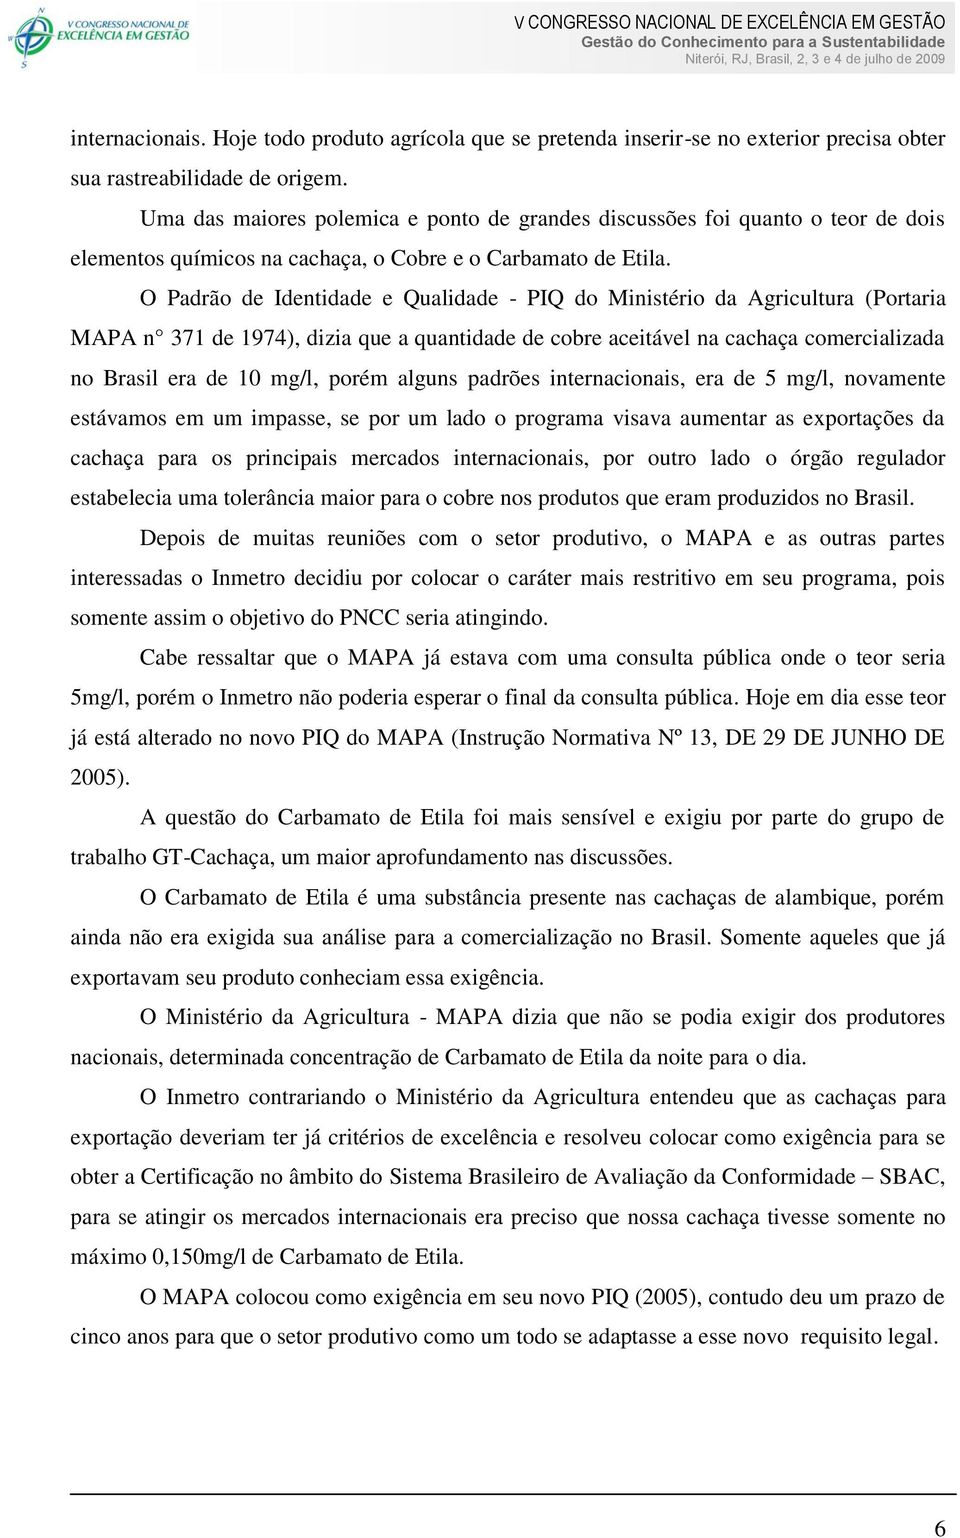 O Padrão de Identidade e Qualidade - PIQ do Ministério da Agricultura (Portaria MAPA n 371 de 1974), dizia que a quantidade de cobre aceitável na cachaça comercializada no Brasil era de 10 mg/l,